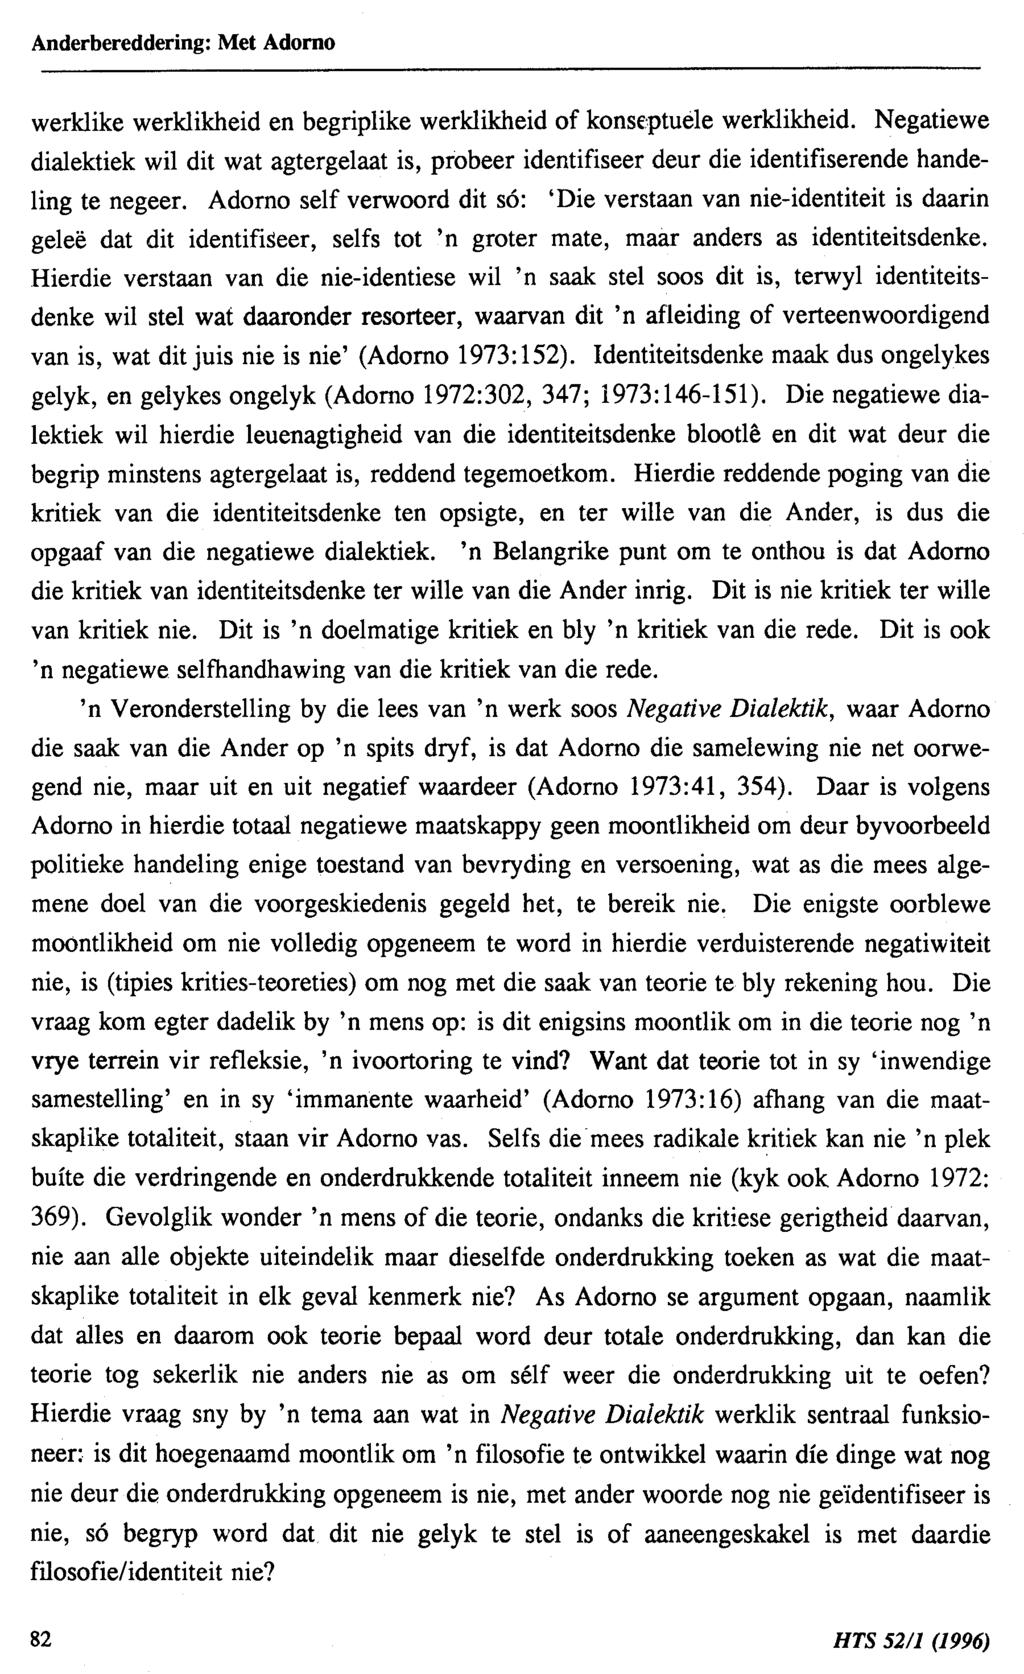 Anderbereddering: Met Adorno werklike werklikheid en begrip1ike werklikheid of konsf.'ptue1e werklikheid.